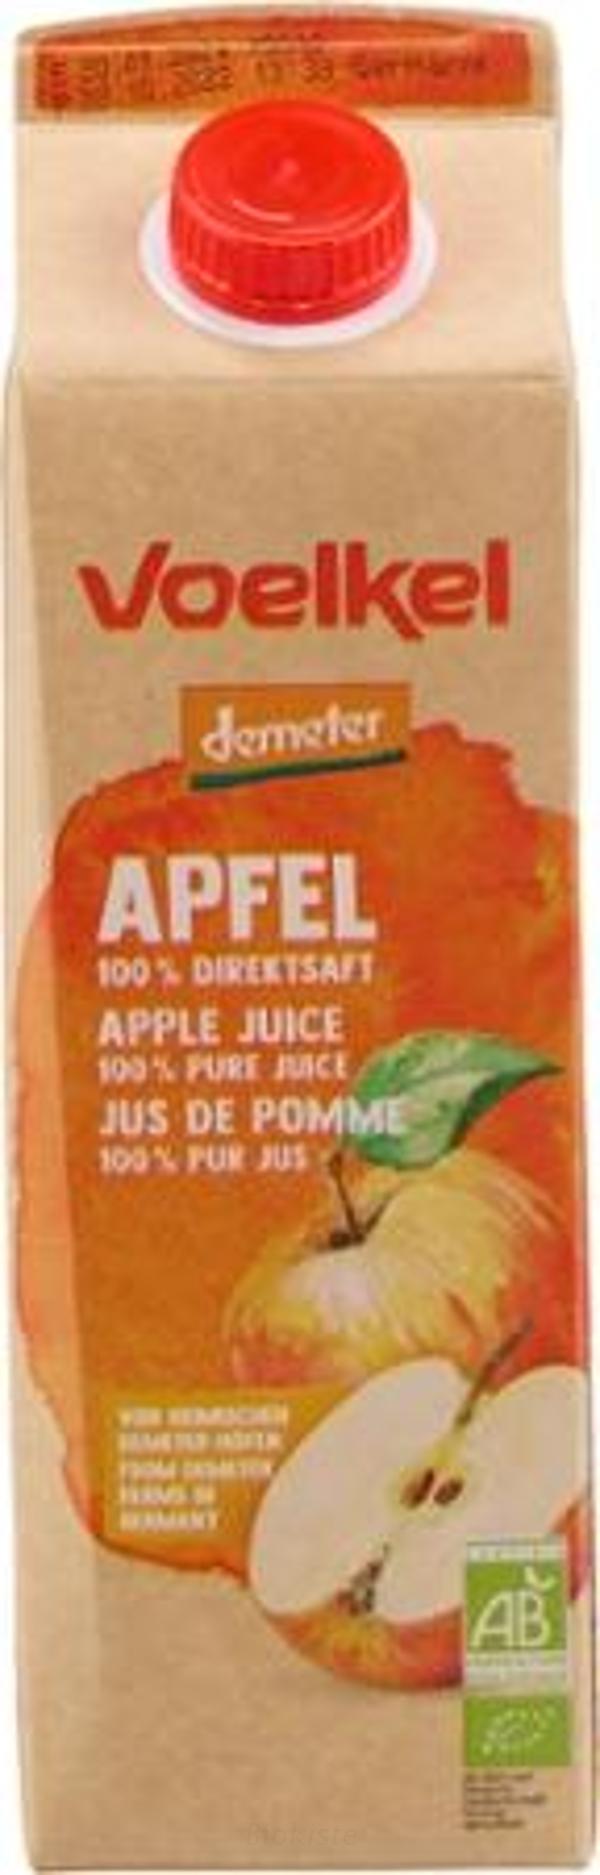 Produktfoto zu Heimischer Apfelsaft Elopak